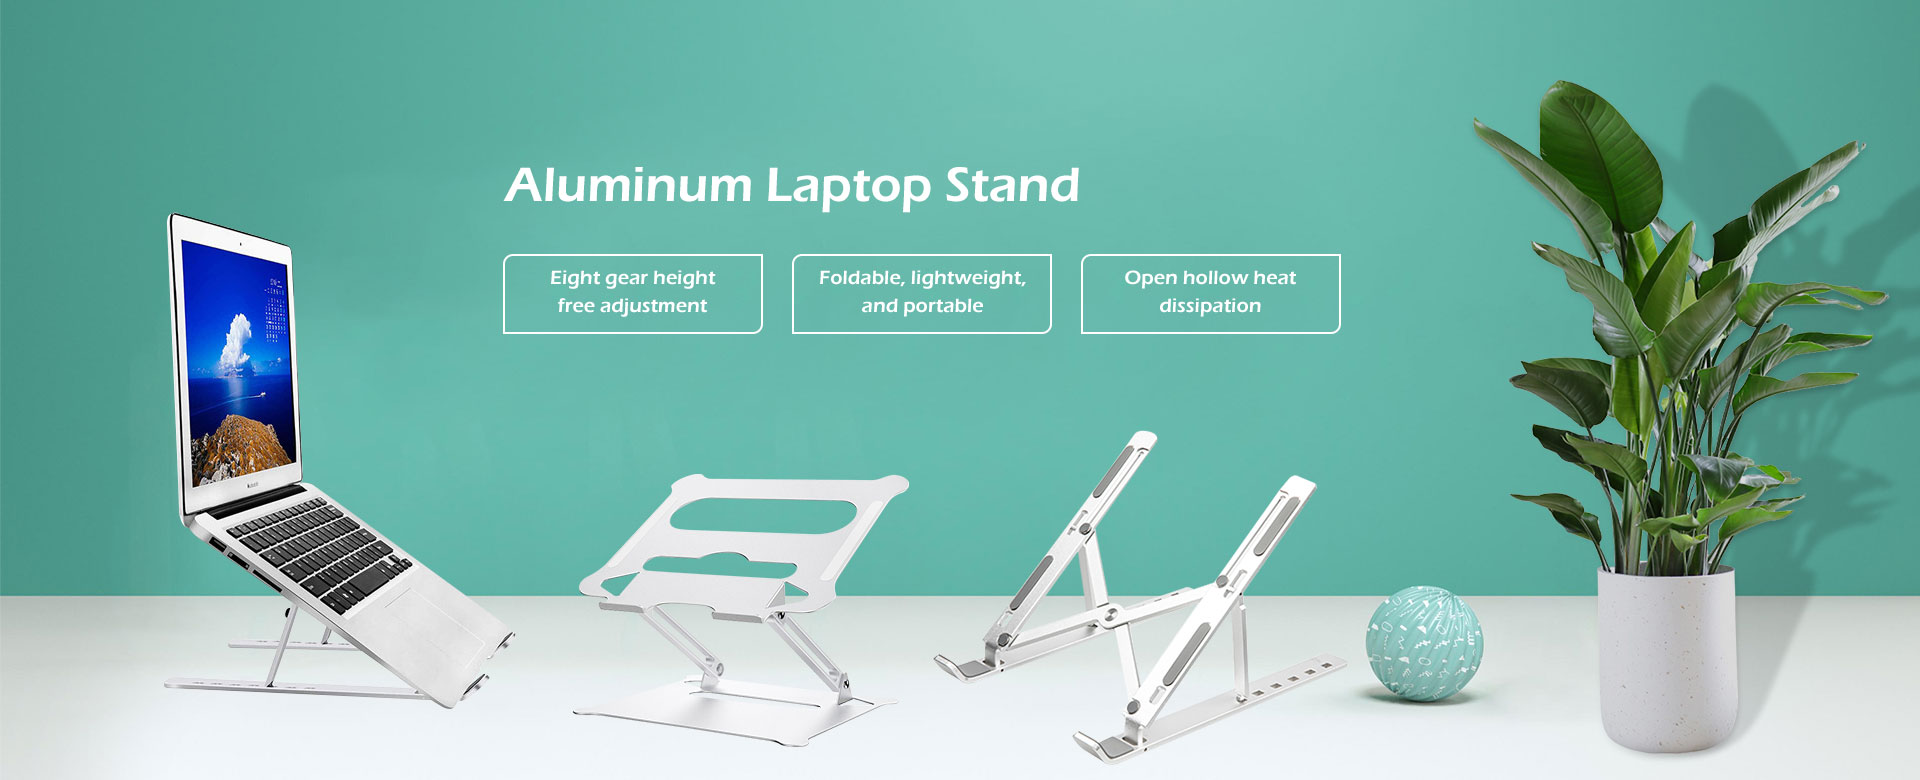 China Aluminum Laptop Stand Manufacturers